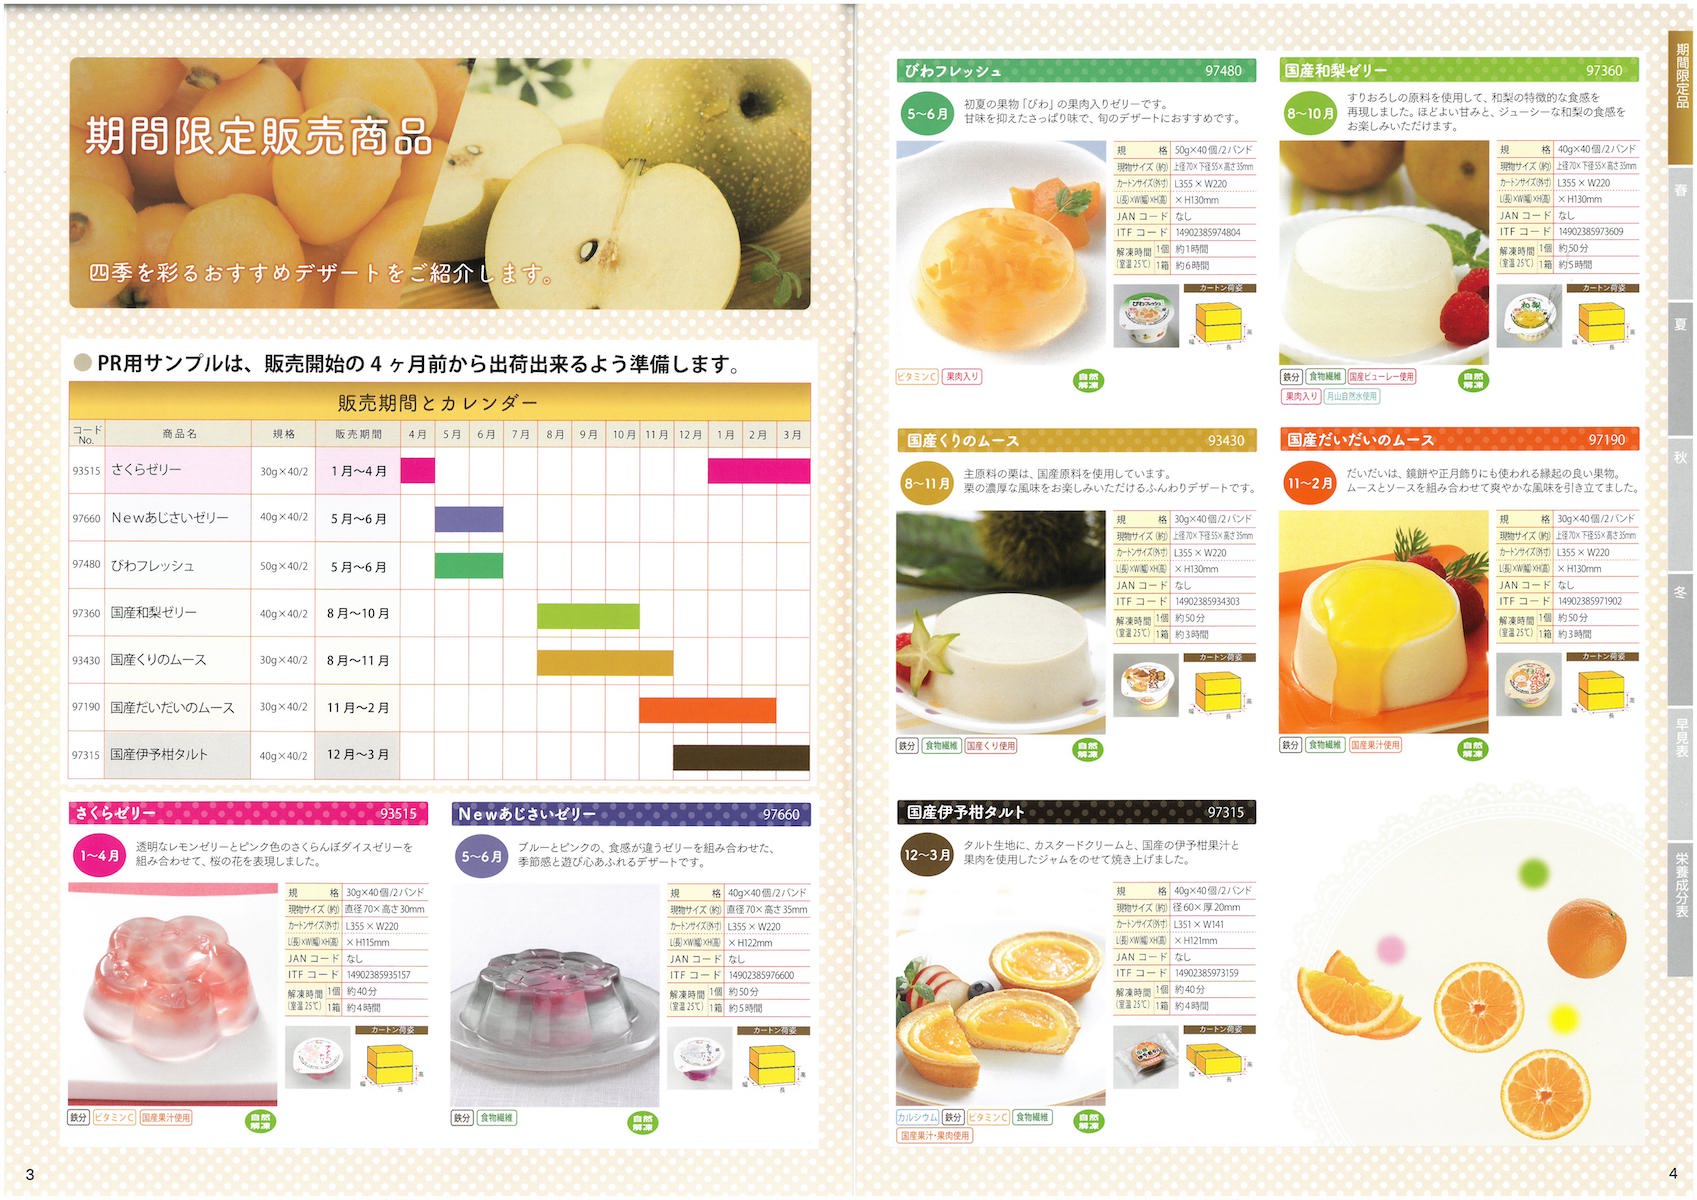 日東ベスト2018業務用デザート総合カタログ DESSERT Grand Catalog | 冷凍食品カタログ.com